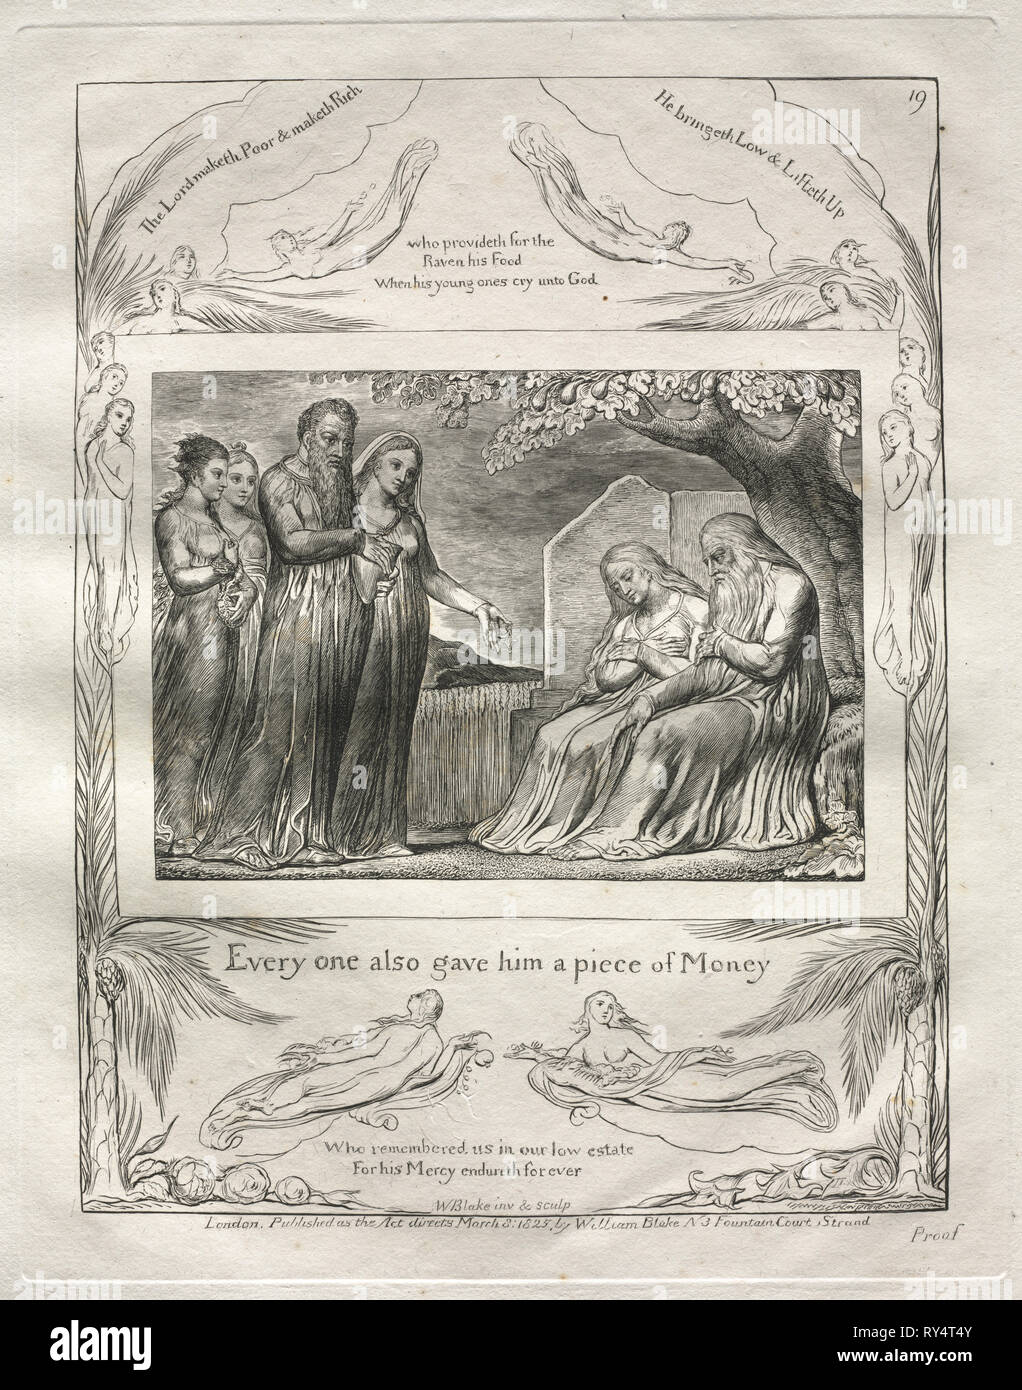 El libro de Job: Pl. 19, cada uno también le dio una pieza de dinero, de 1825. William Blake (británico, 1757-1827). Grabado Foto de stock